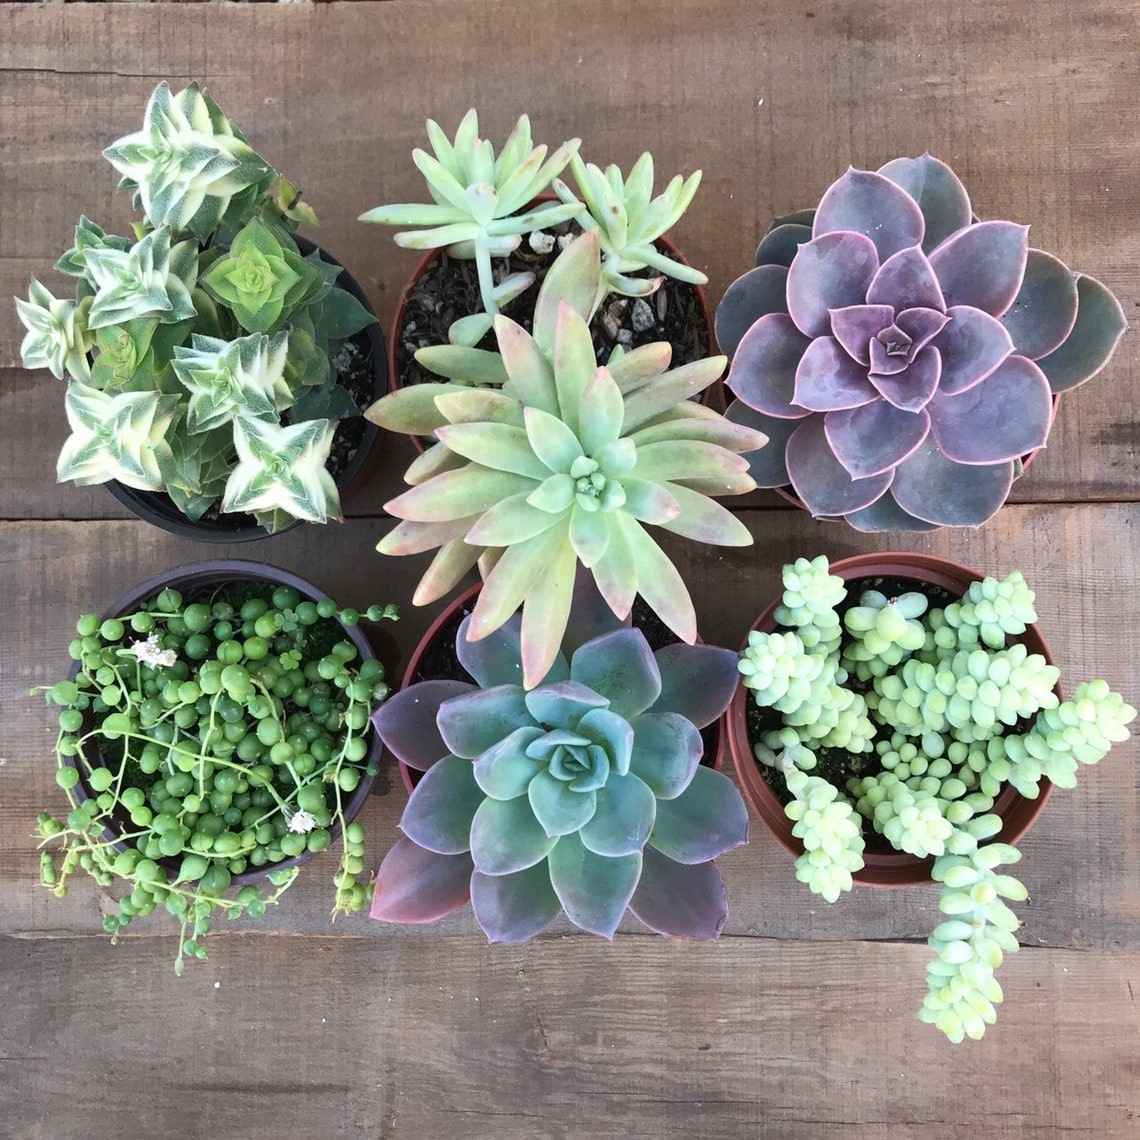 Succulent plants 20 Best types & tips to grow indoors Buy online ...